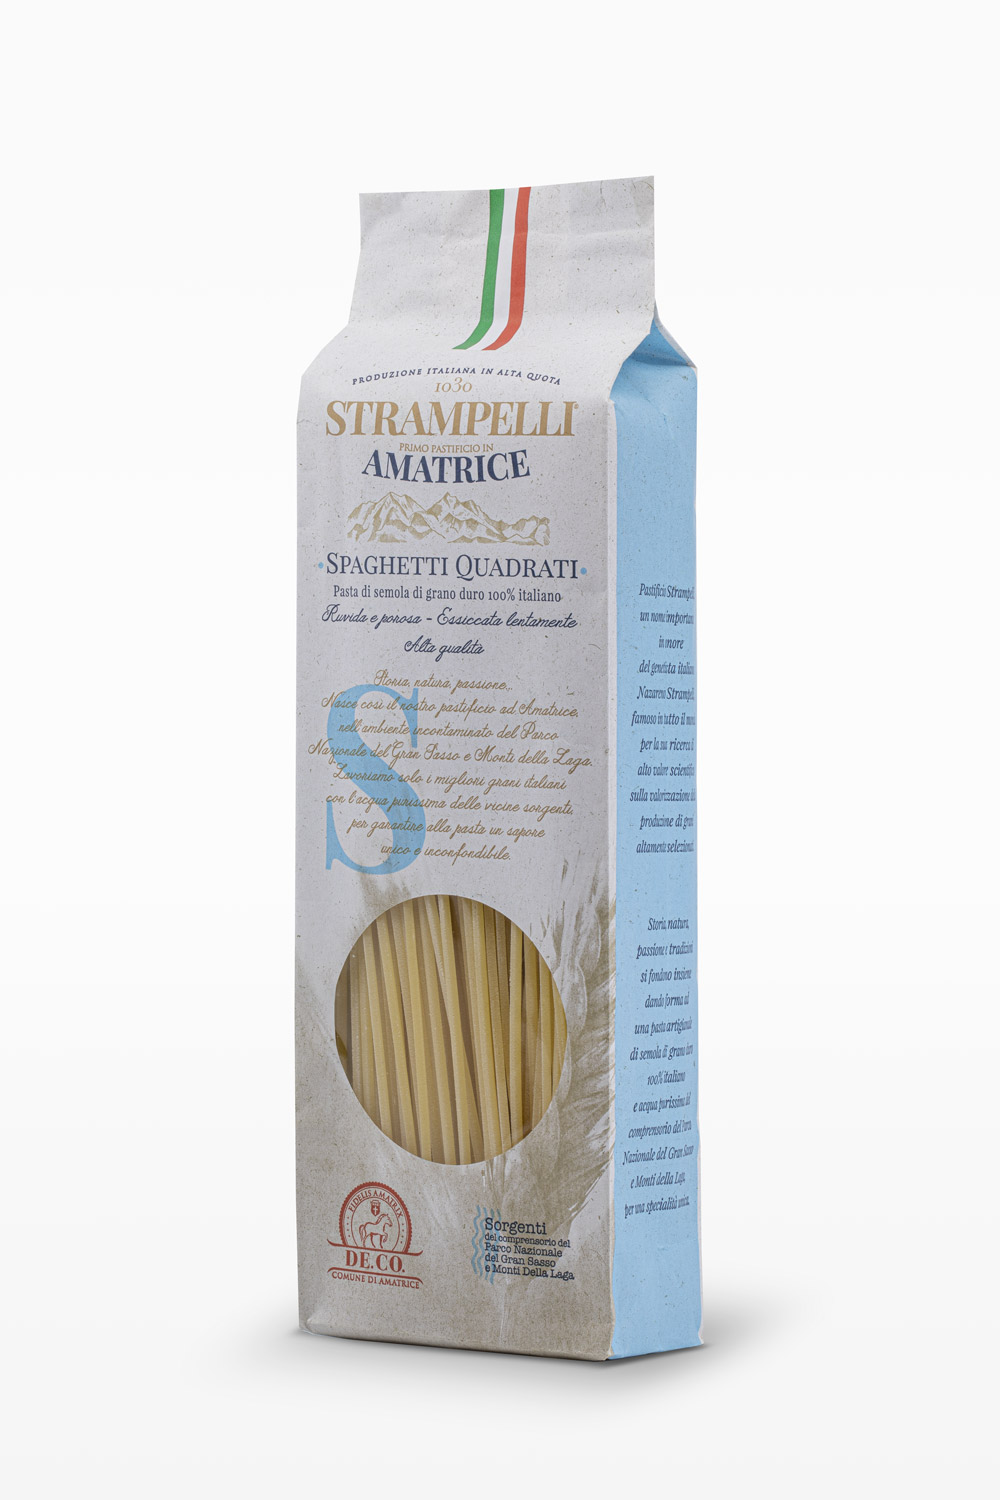 Spaghetti quadrati - Pasta di semola di grano duro, ruvida e porosa, grano 100% italiano, essiccazione lenta a bassa temperatura.